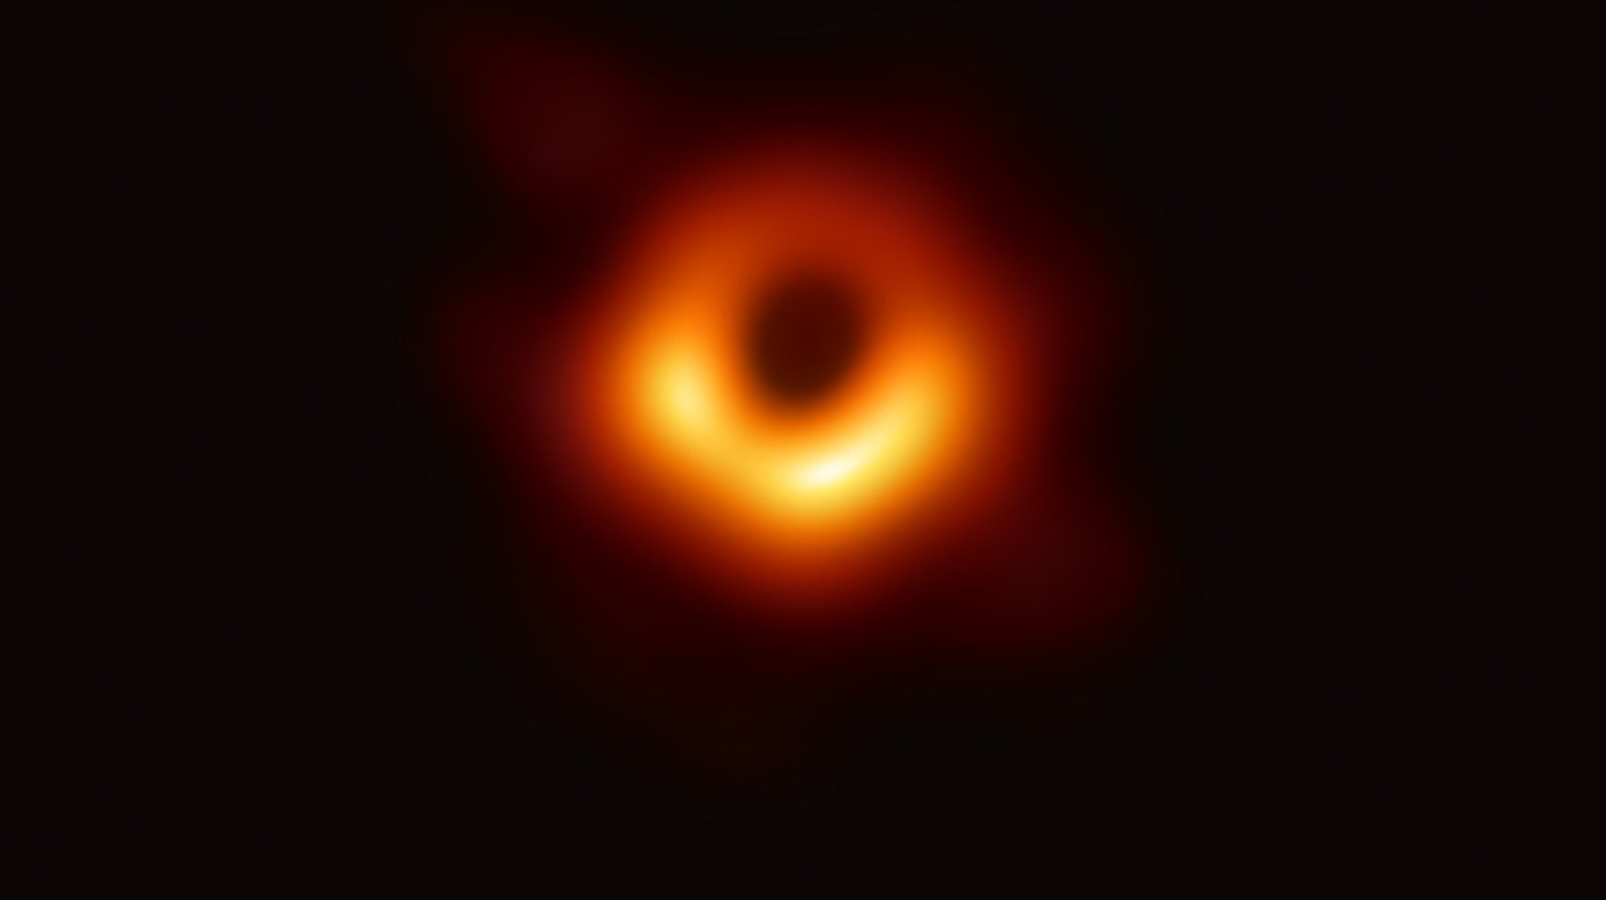 İlk kara delik fotoğrafı paylaşıldı